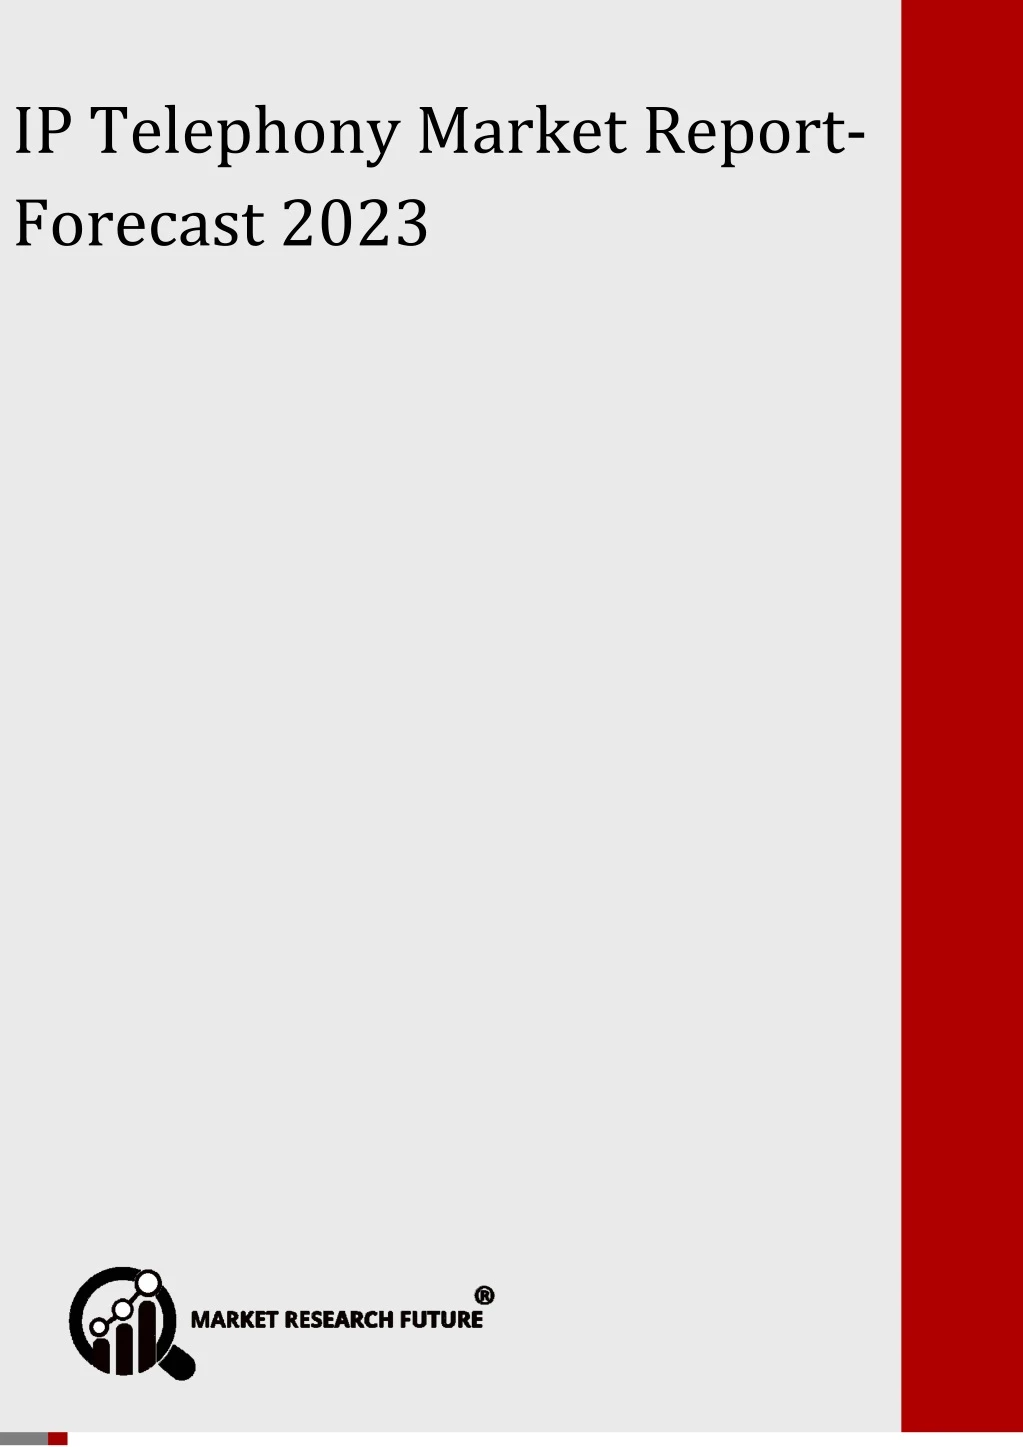 global ip telephony market forecast 2023